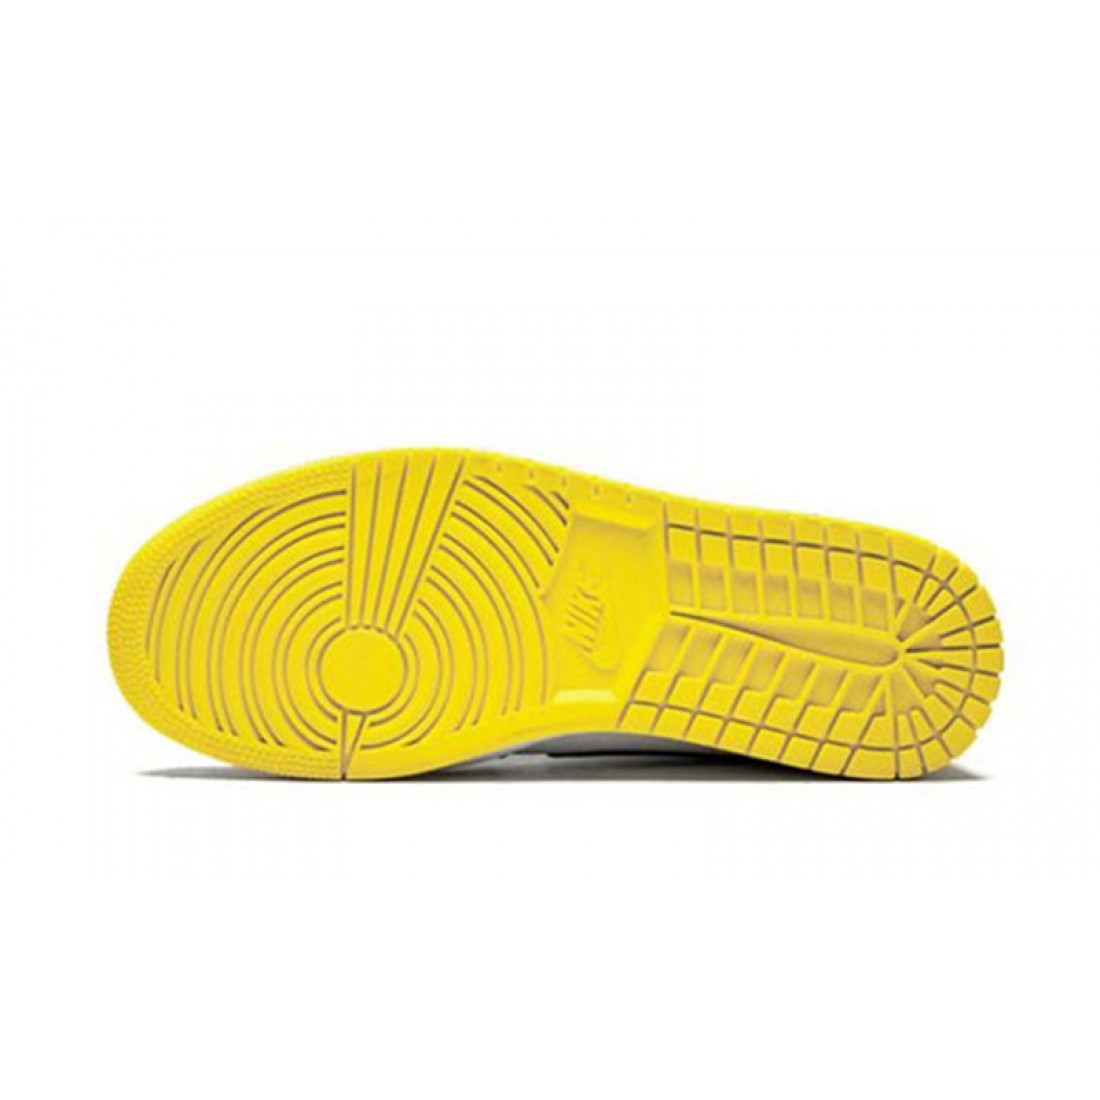 Jordans-1-mid-yellow-toe_1019-1100x1100w.jpg